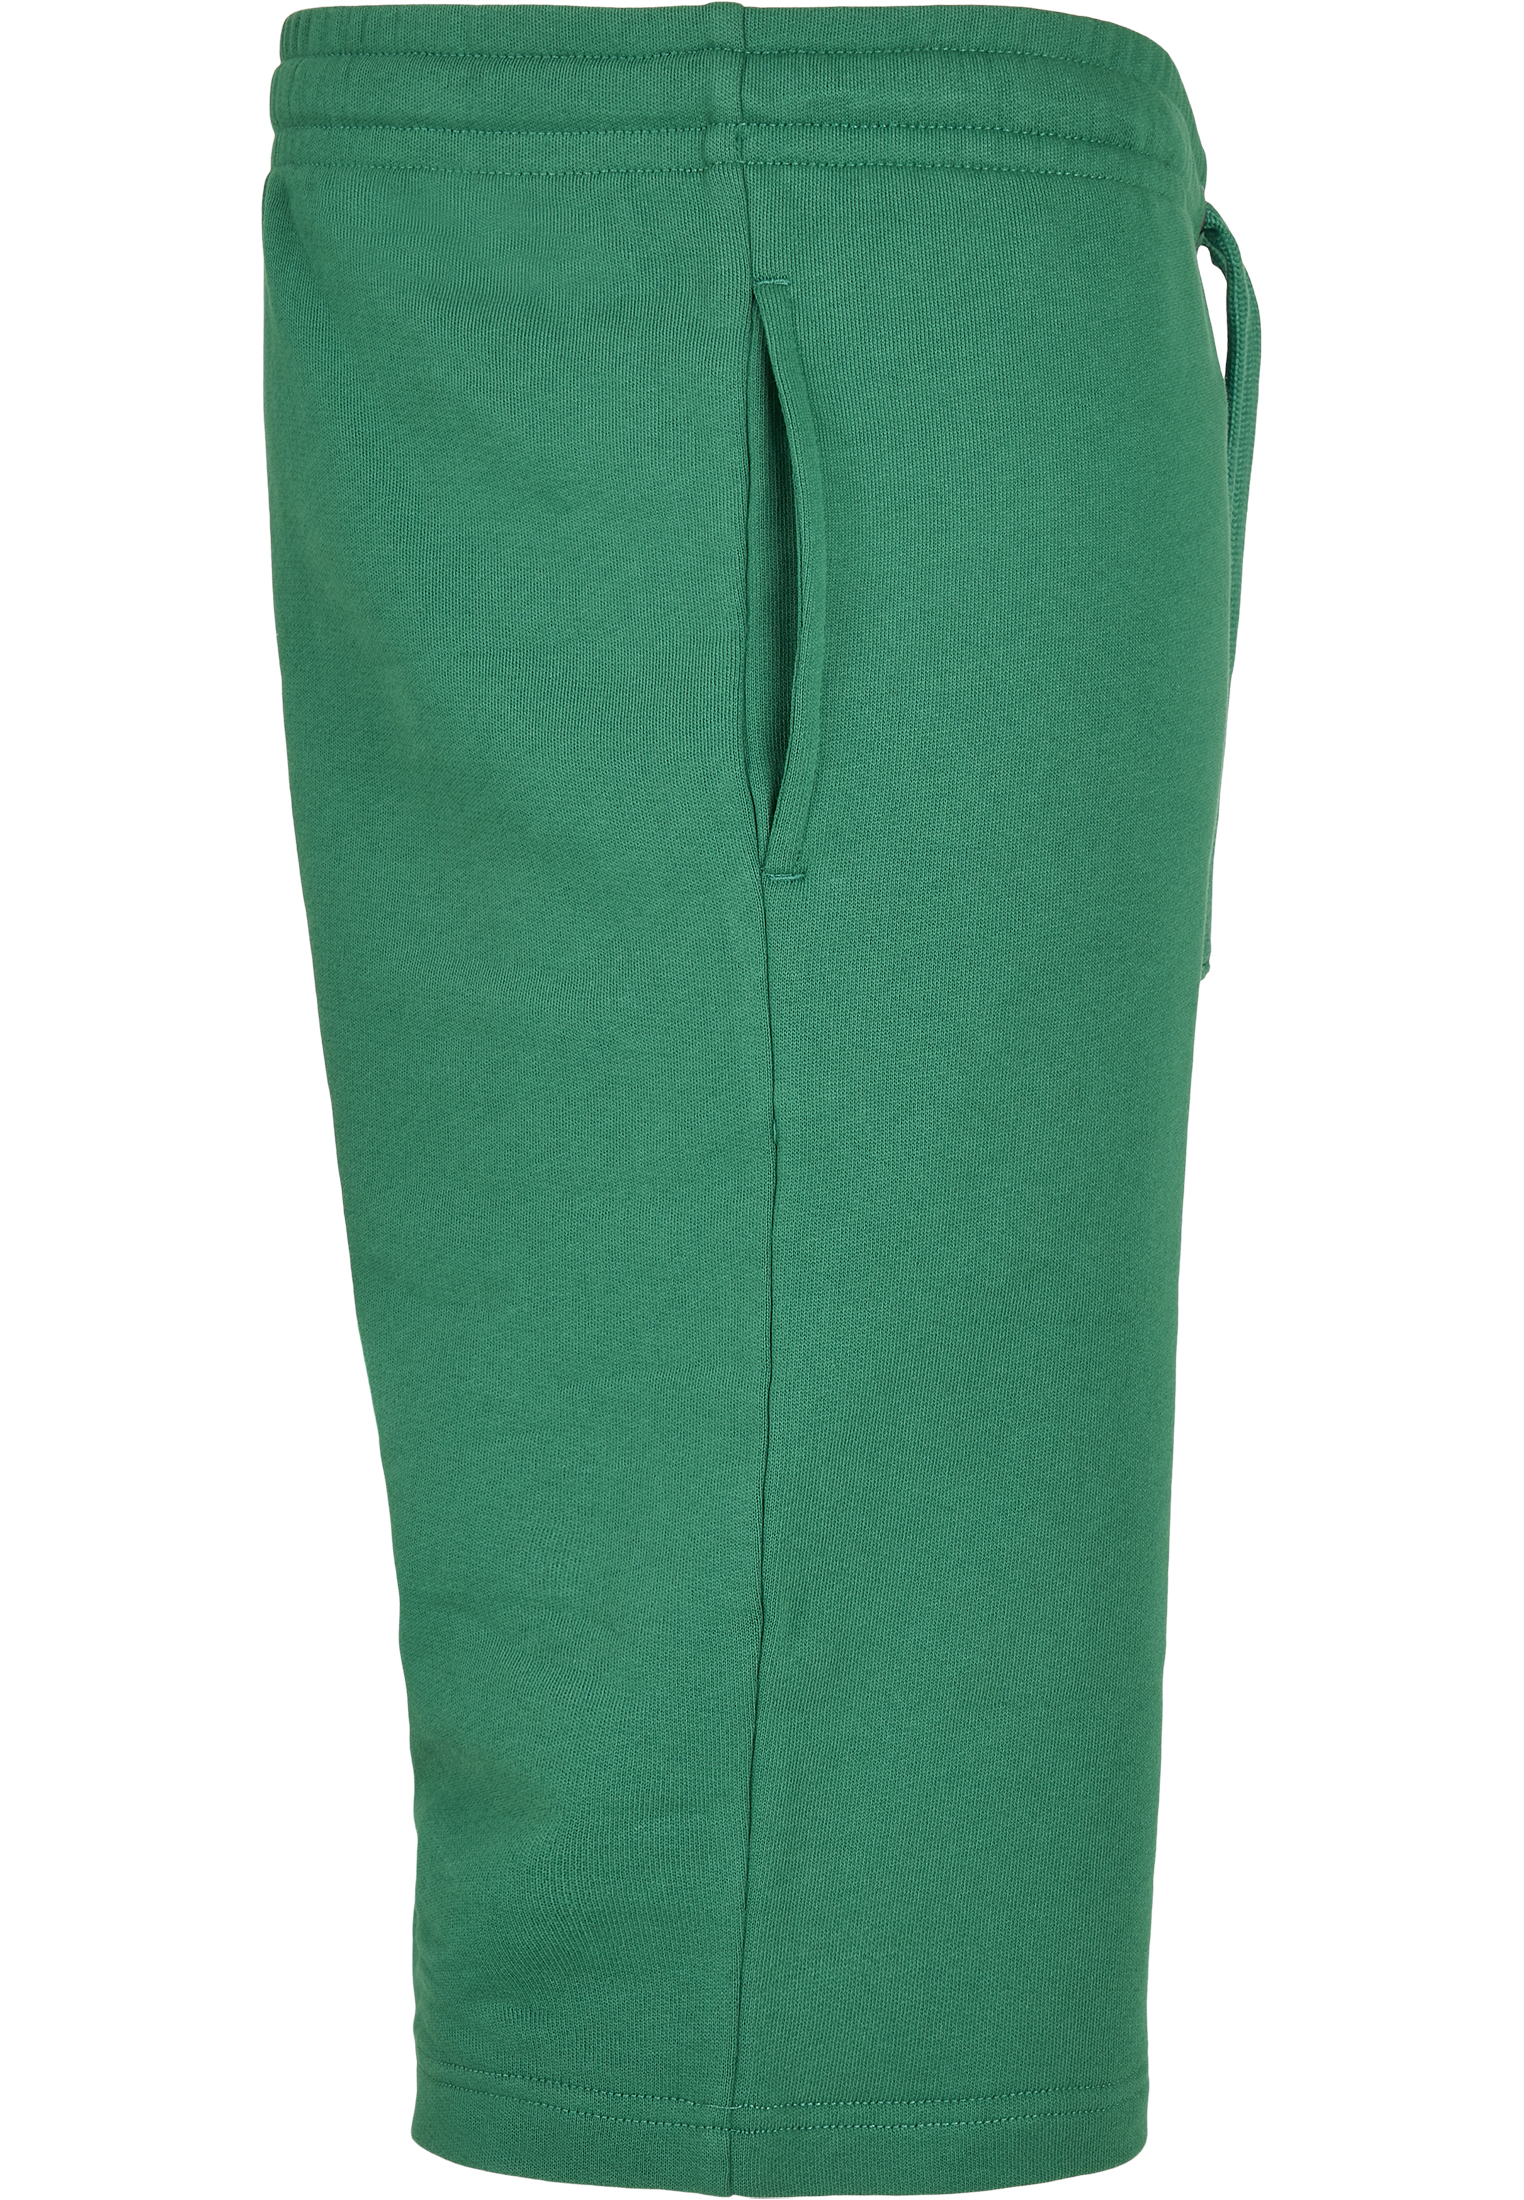 Kurze Hosen Basic Sweatshorts in Farbe junglegreen